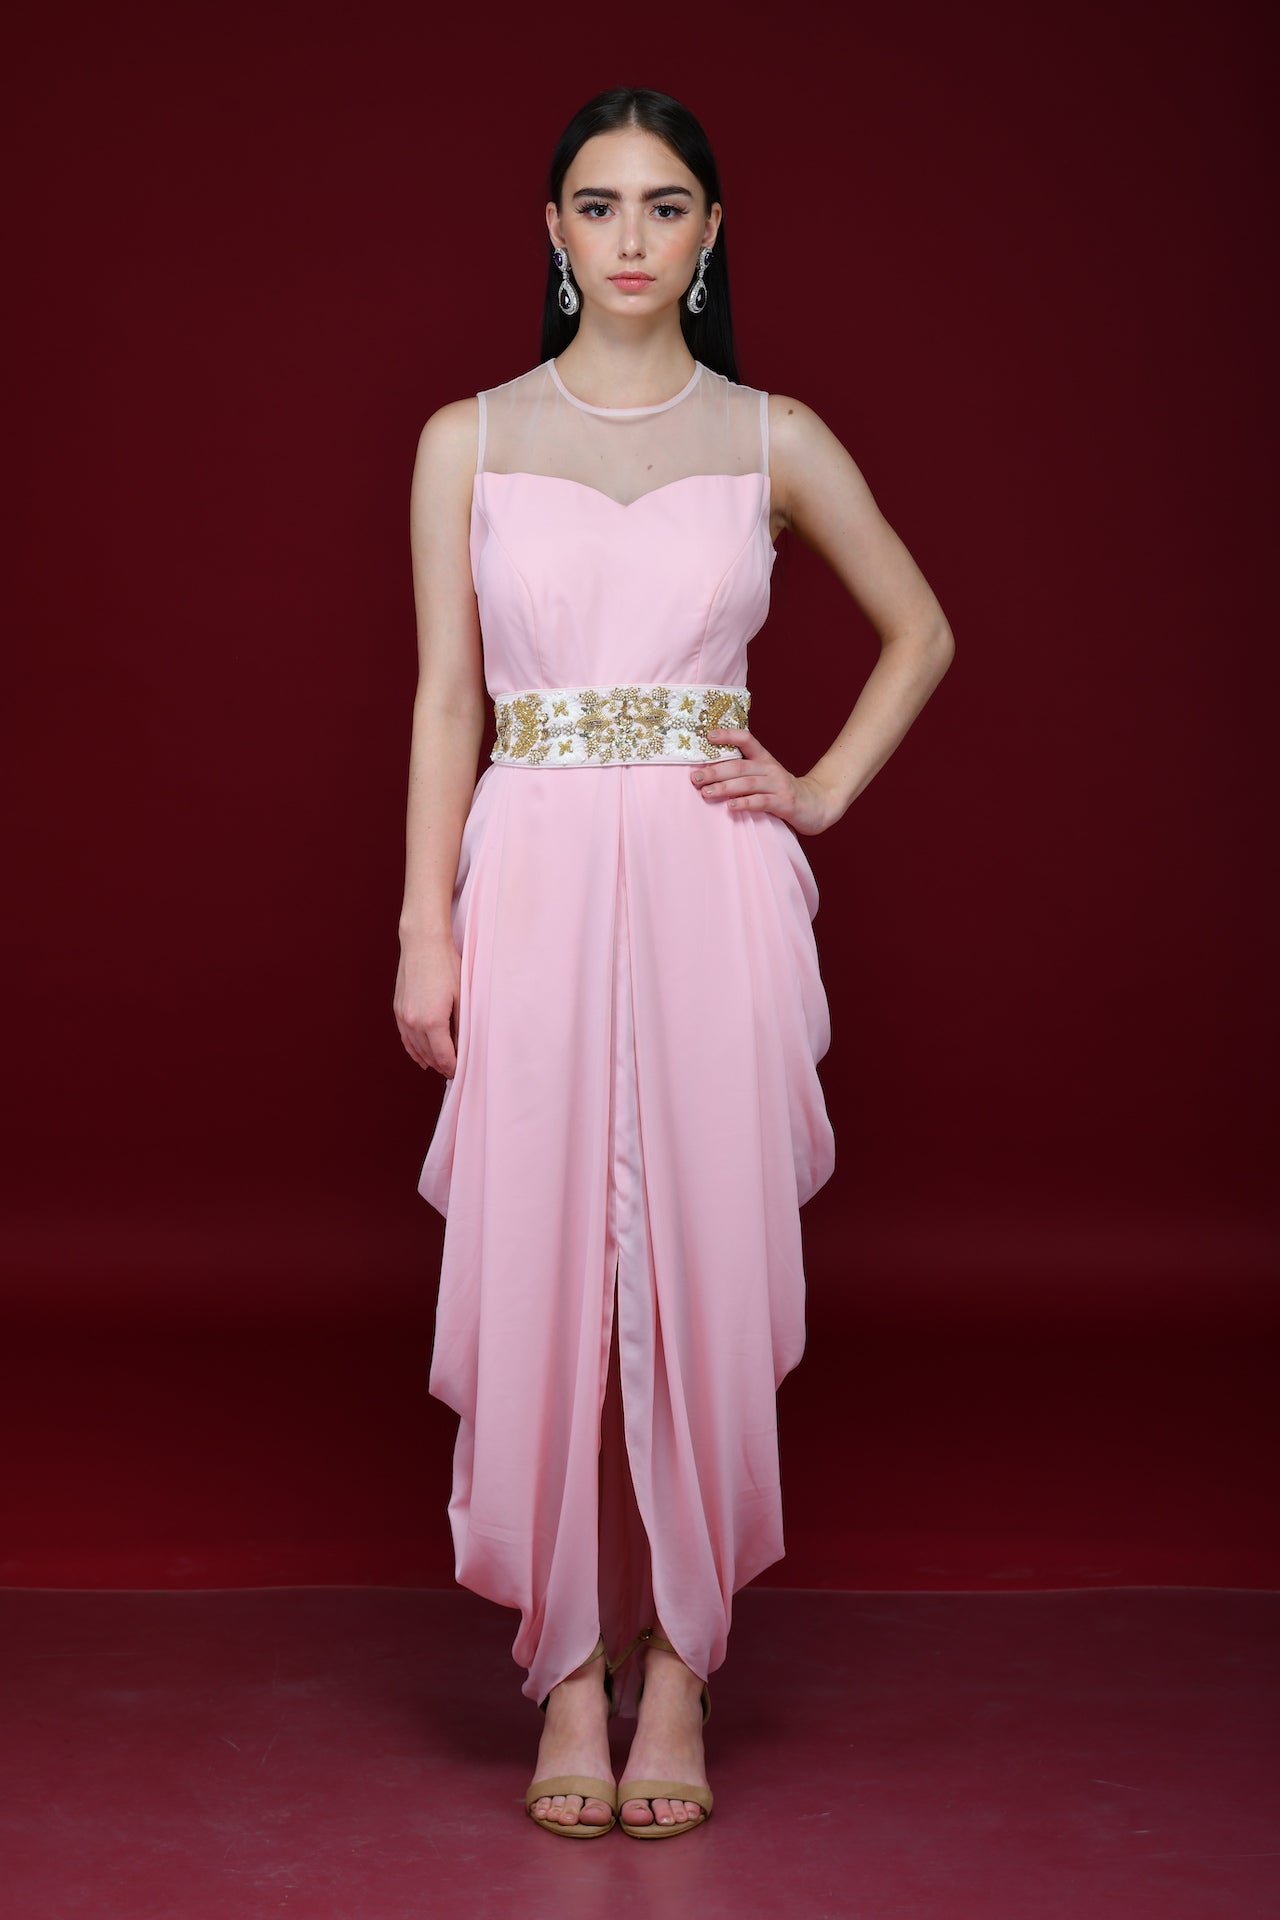 Powder Pink Cowl Tunic Dress - kylee